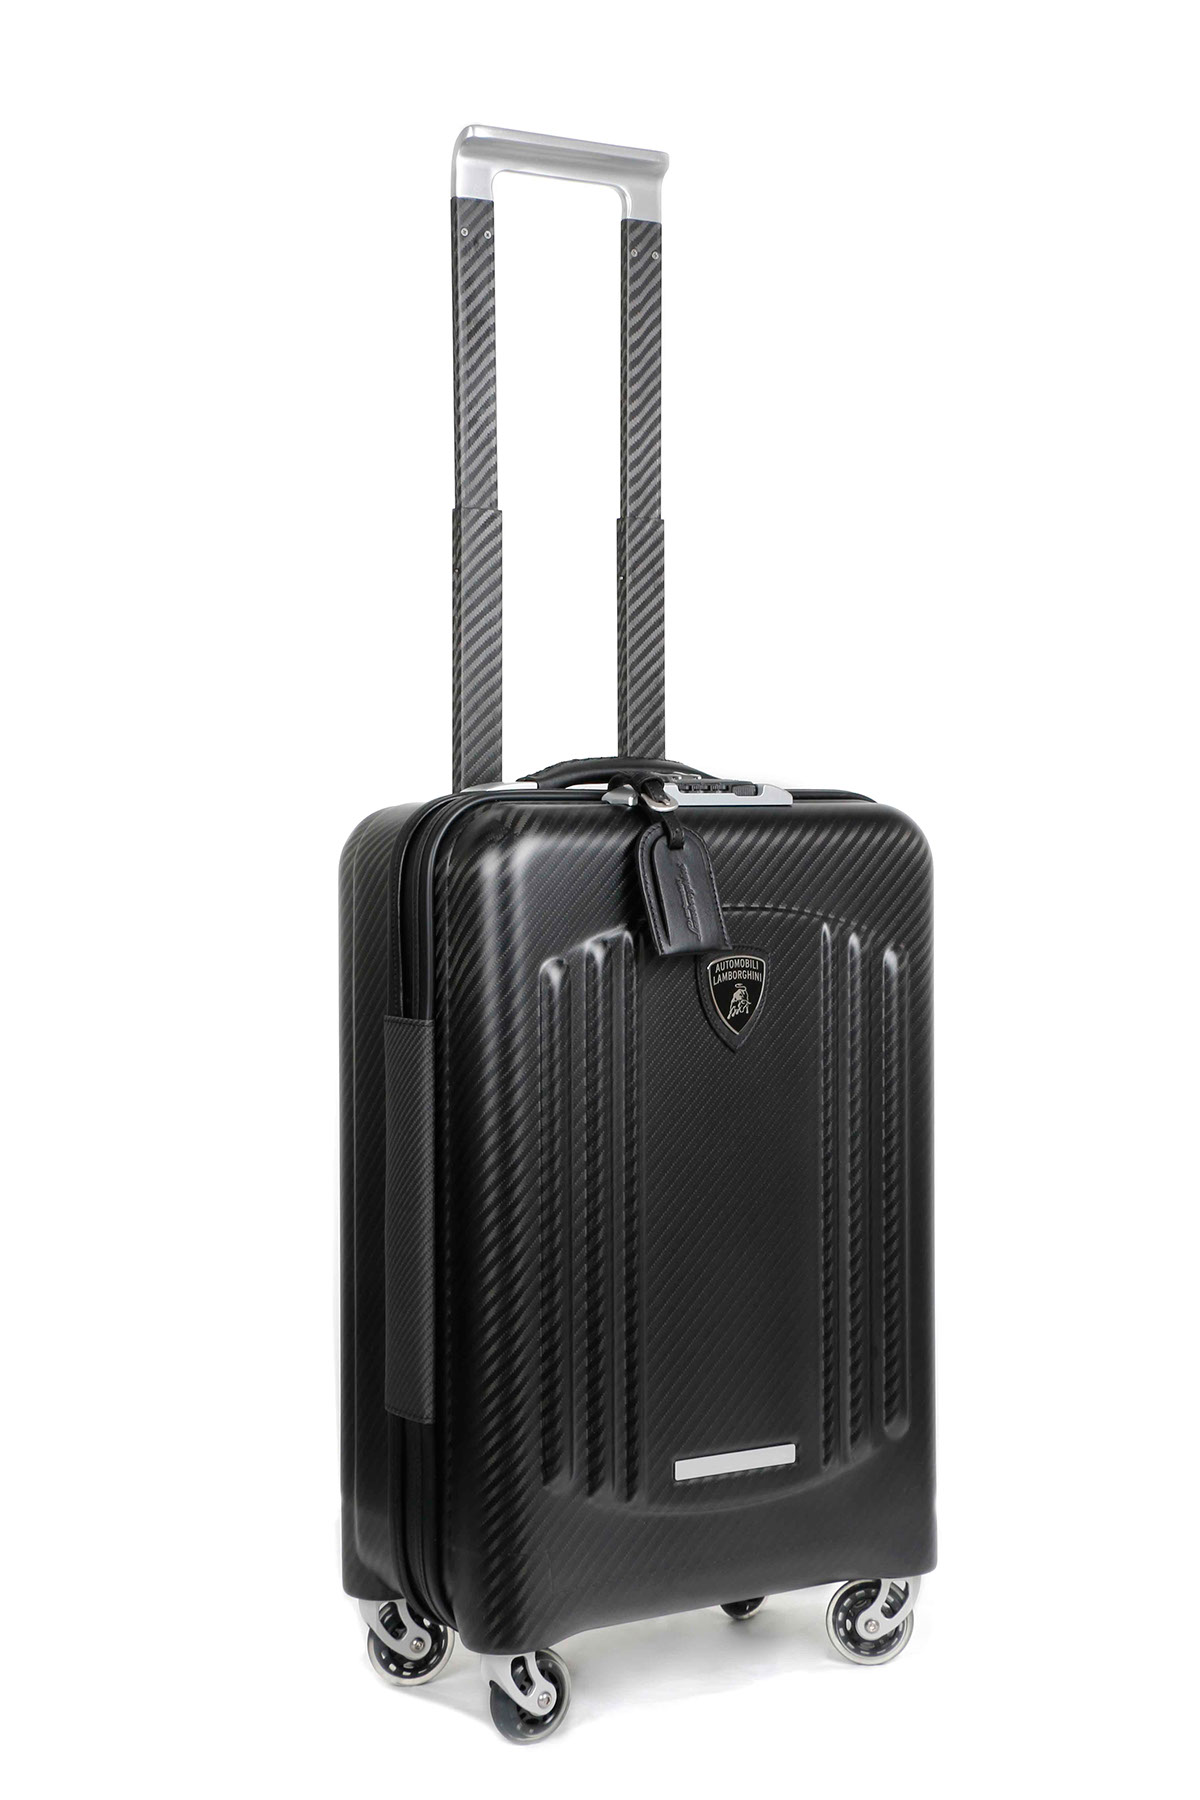 lamborghini luxury luggage on Behance